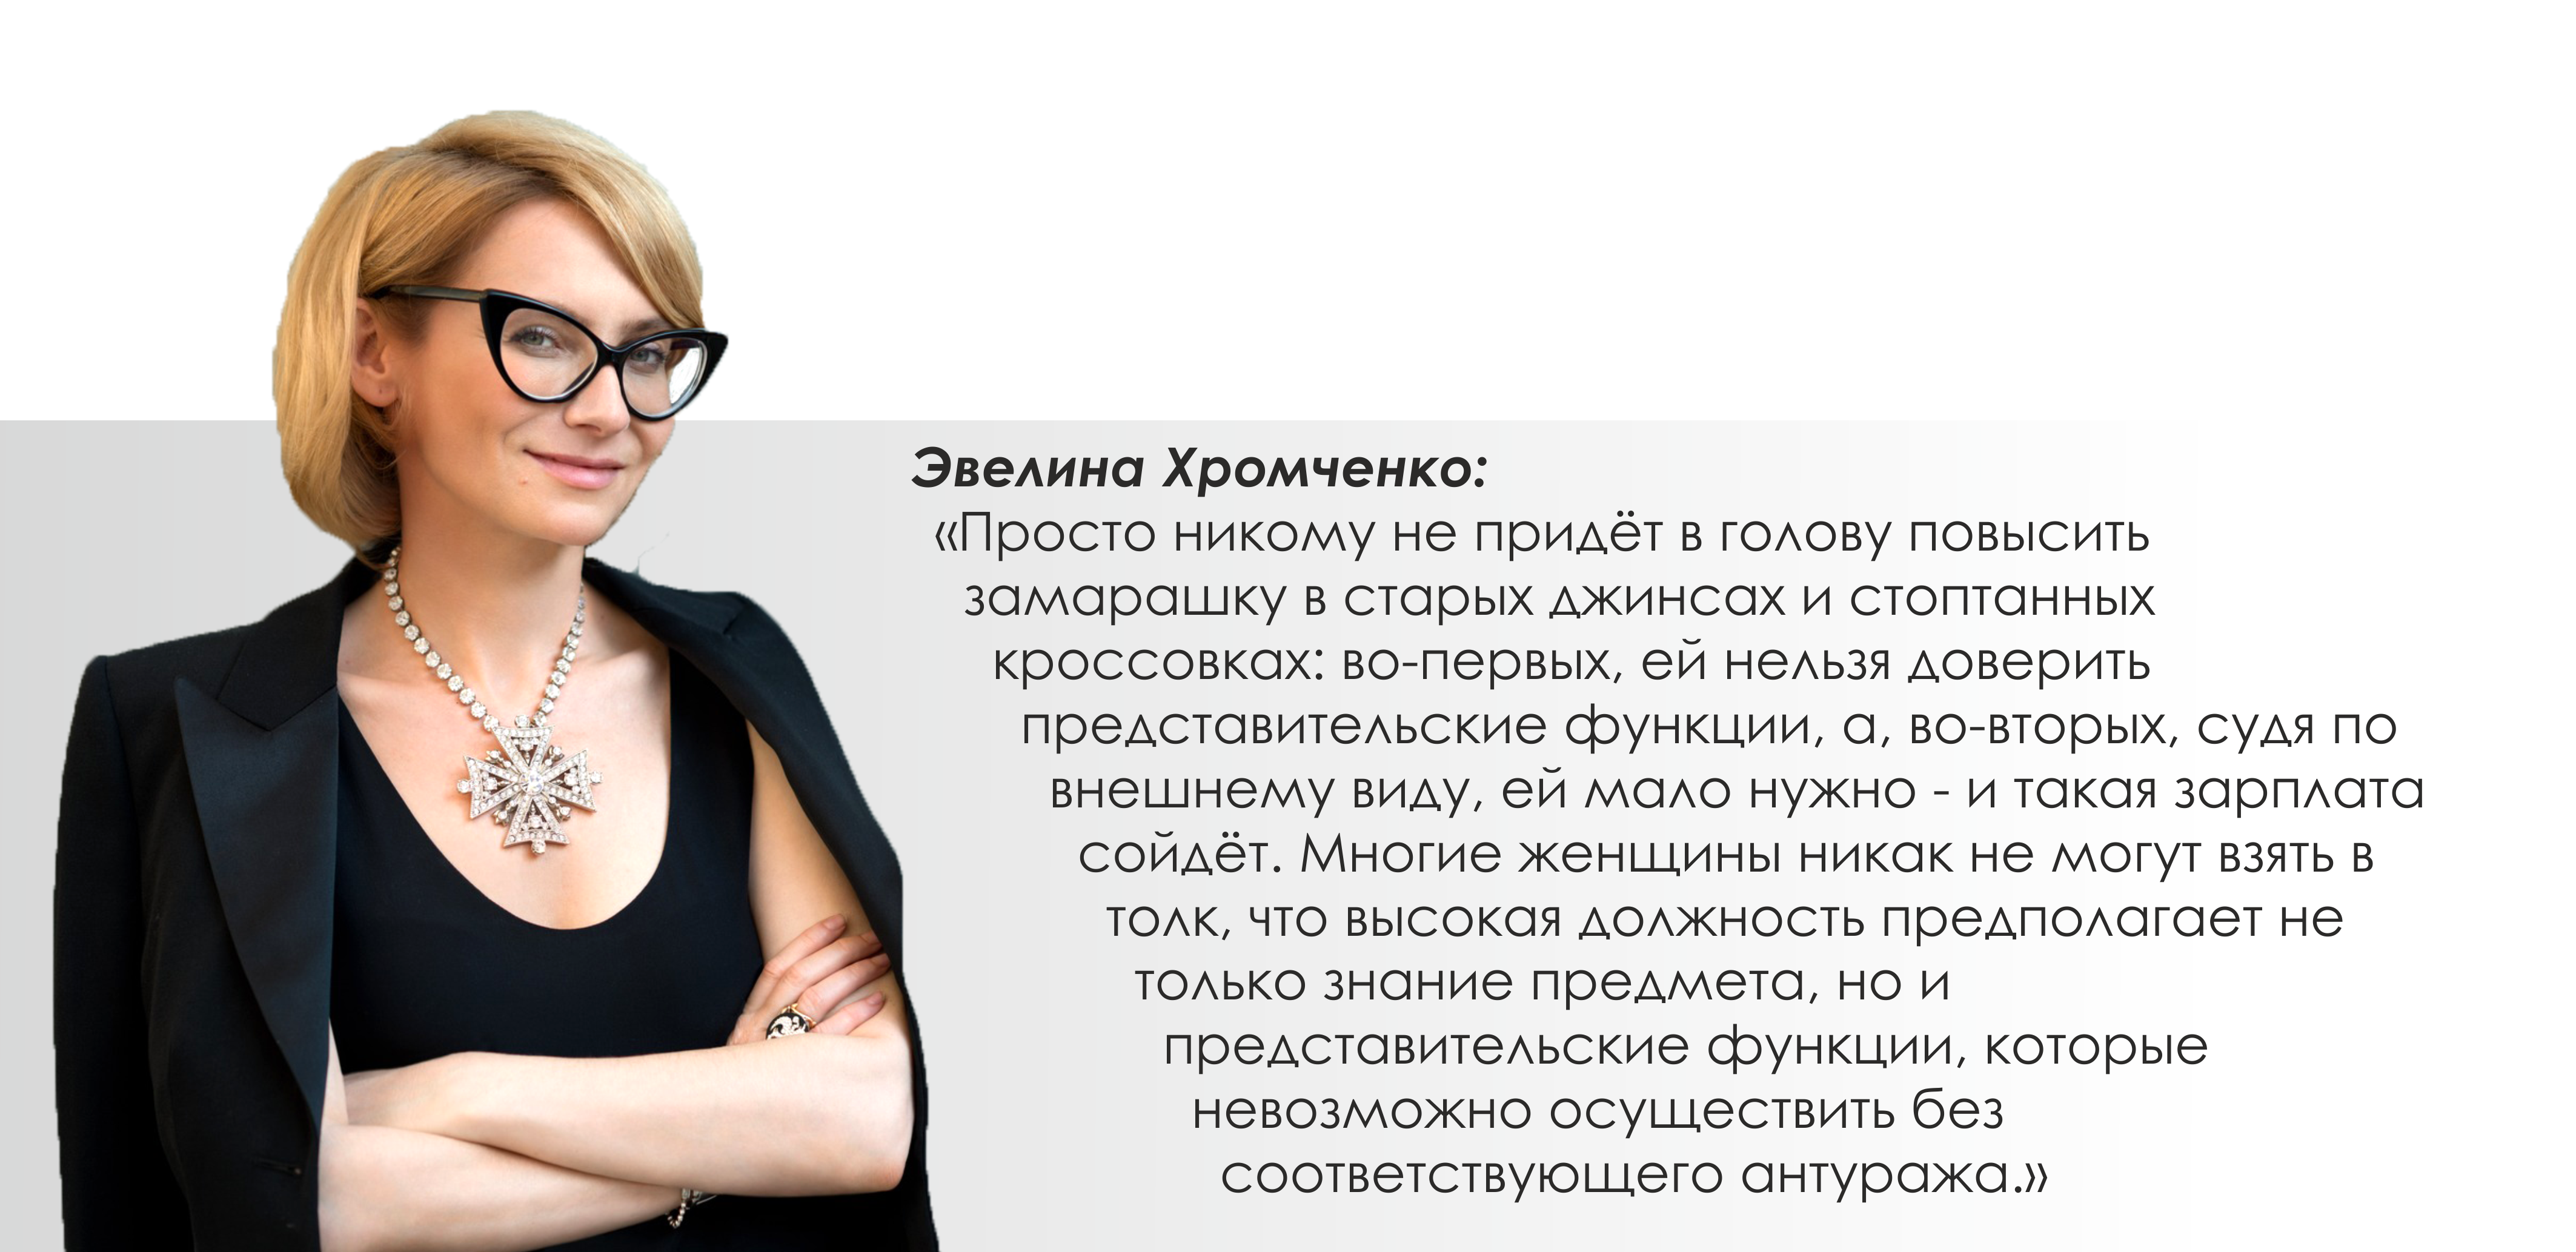 Цитаты Эвелины Хромченко о женщинах